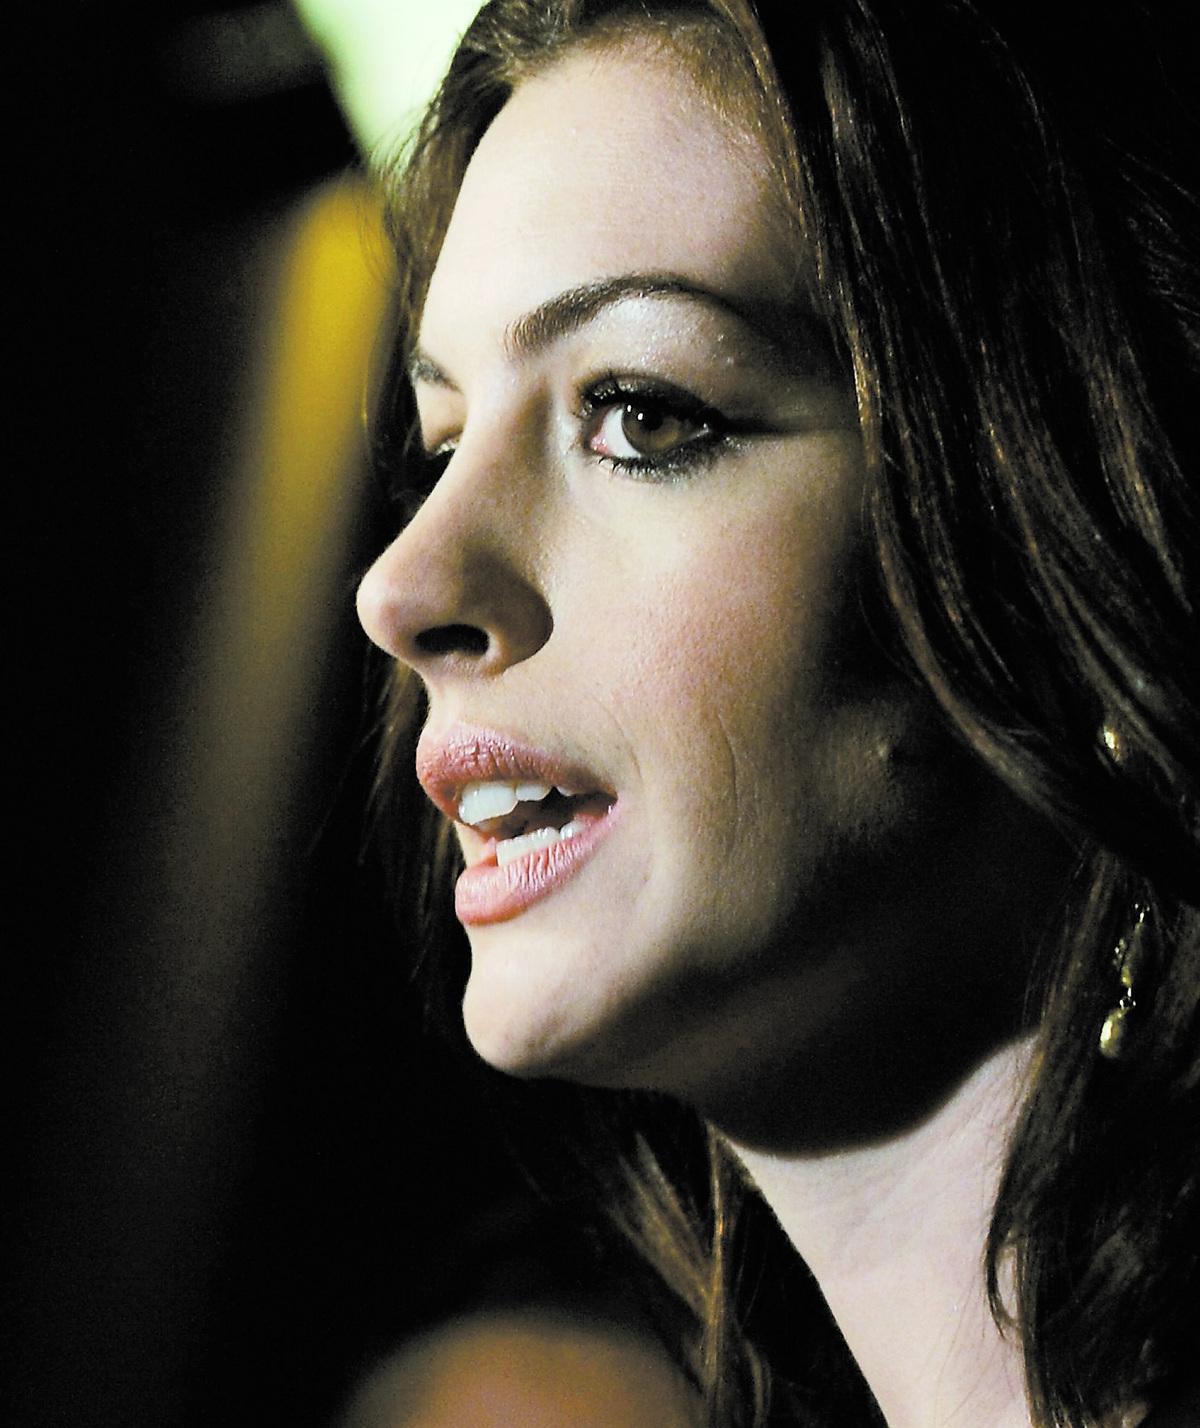 ”För mig personligen är det den bäst skrivna roll jag fått spela”, säger Anne Hathaway om rollen som missbrukaren Kym i bioaktuella ”Rachel getting married”.